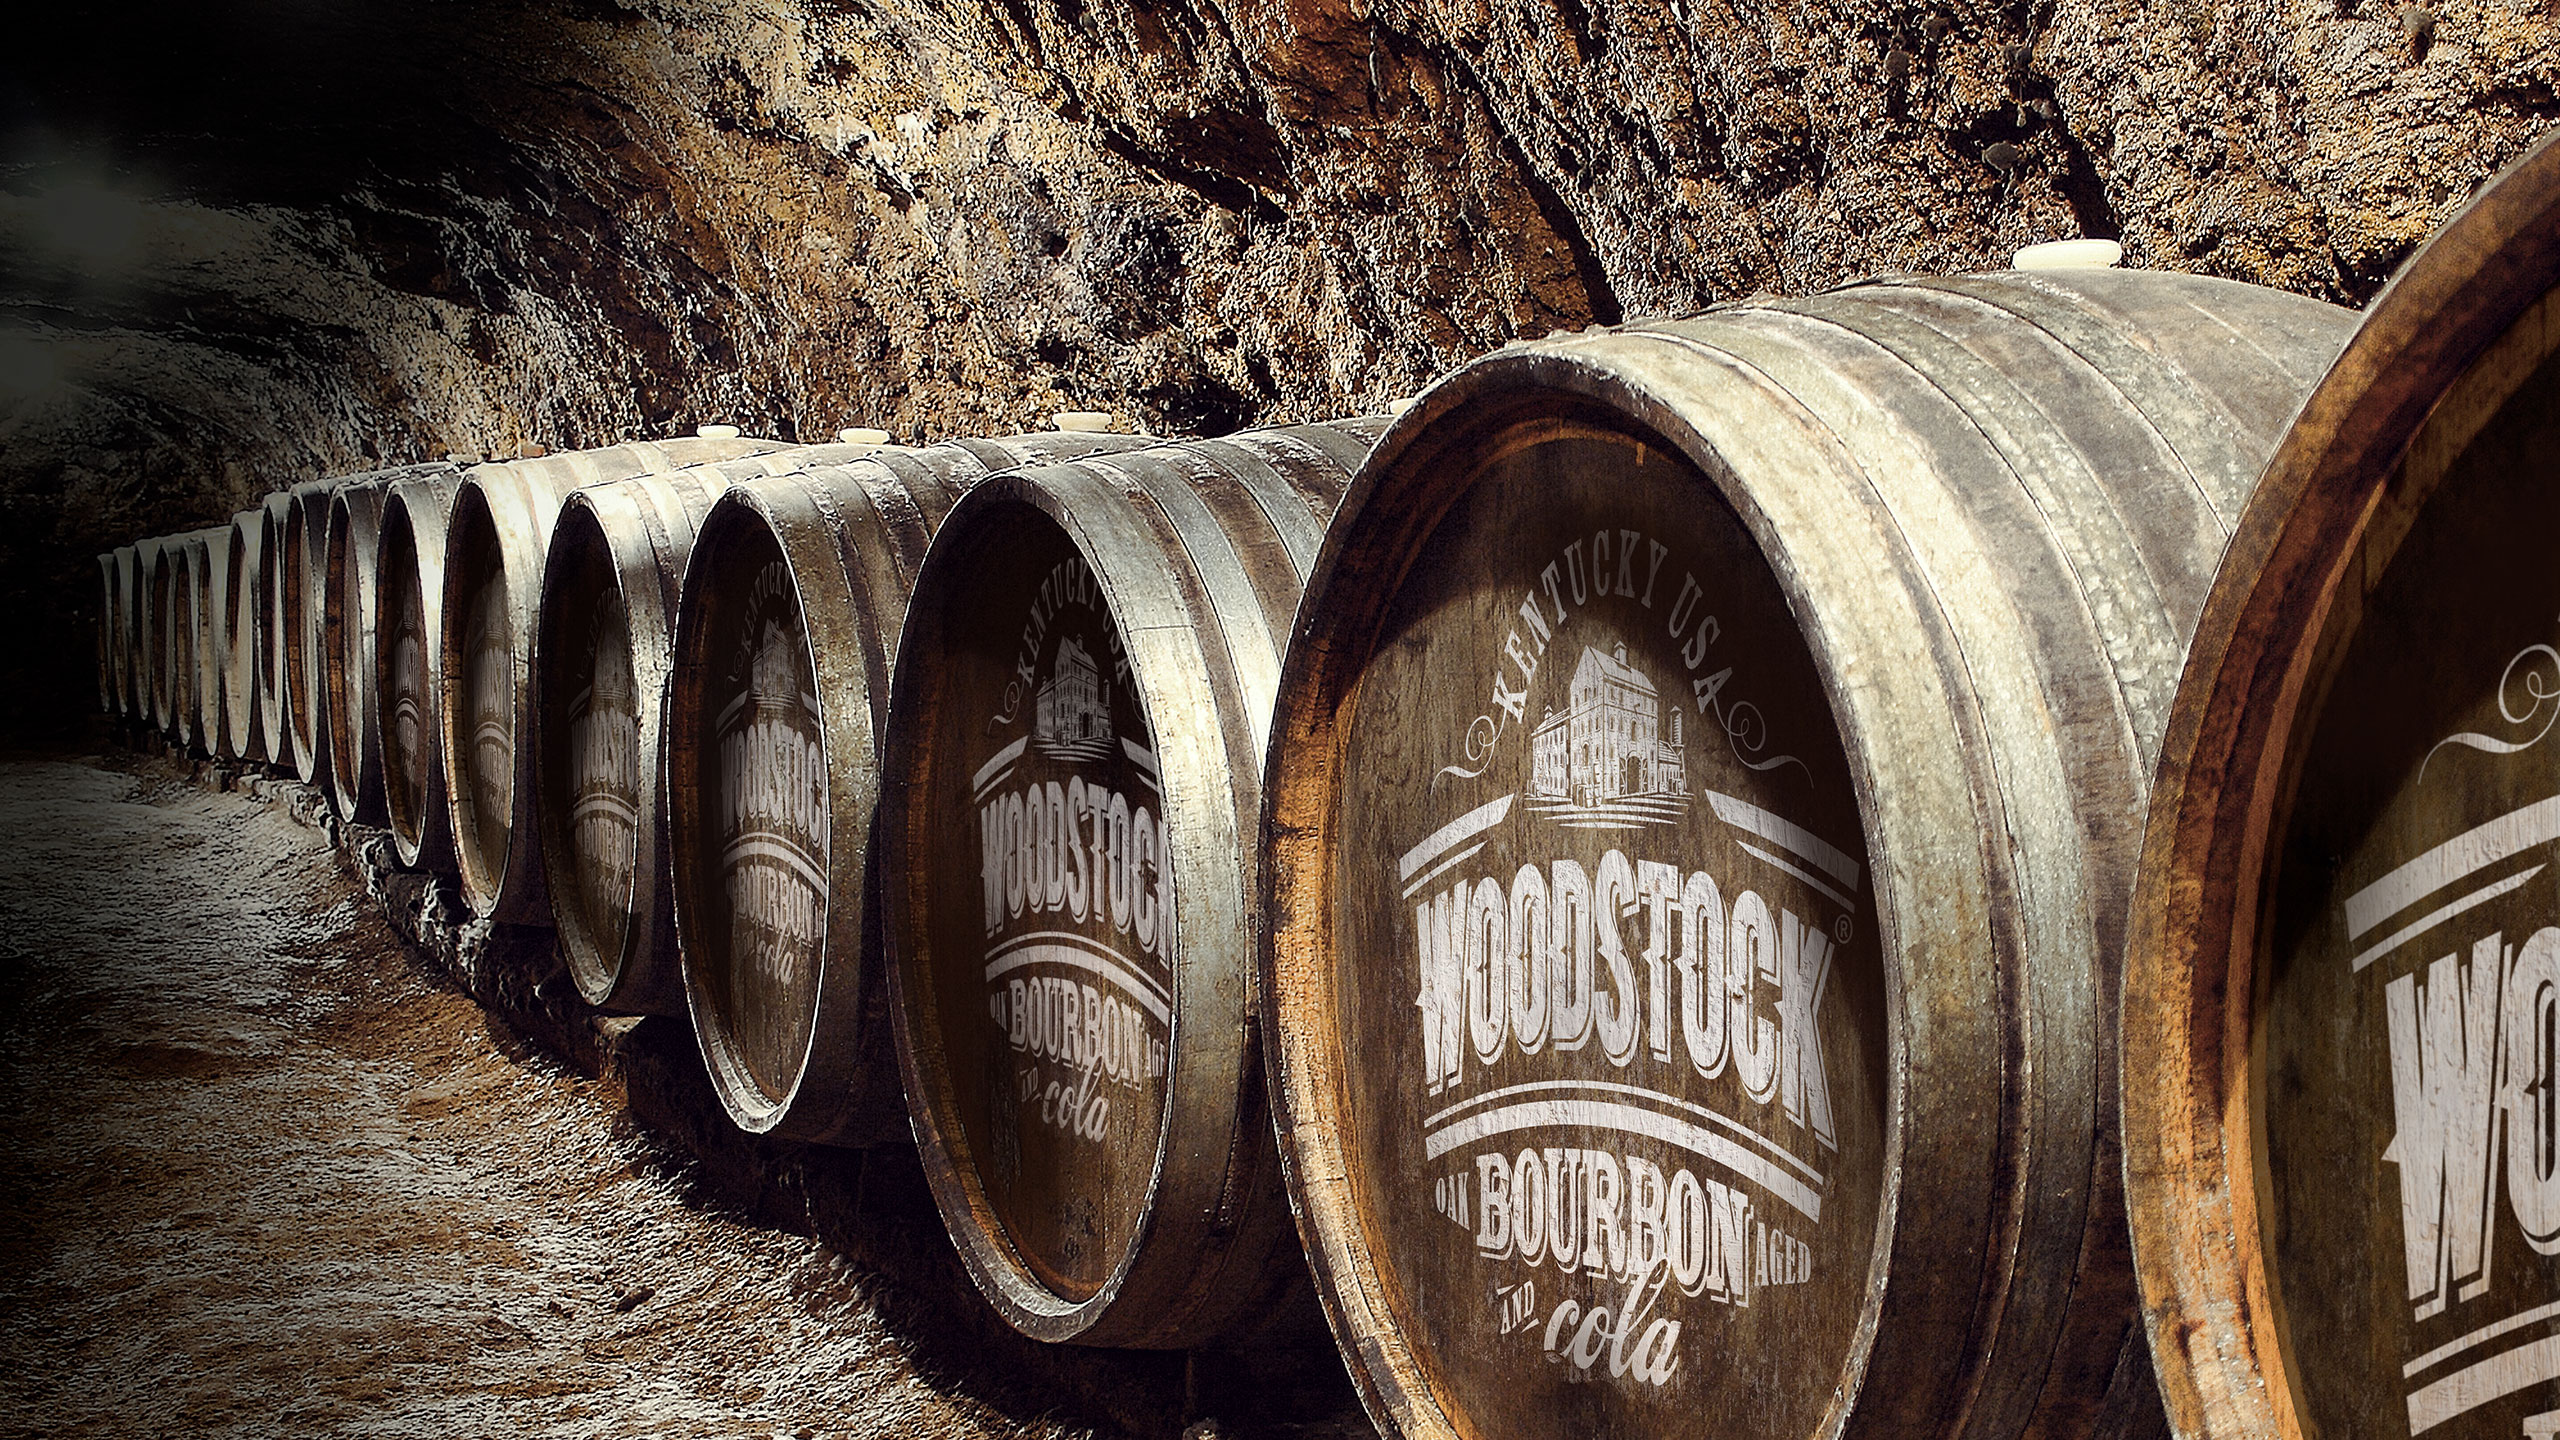 Woodstock Bourbon Barrels